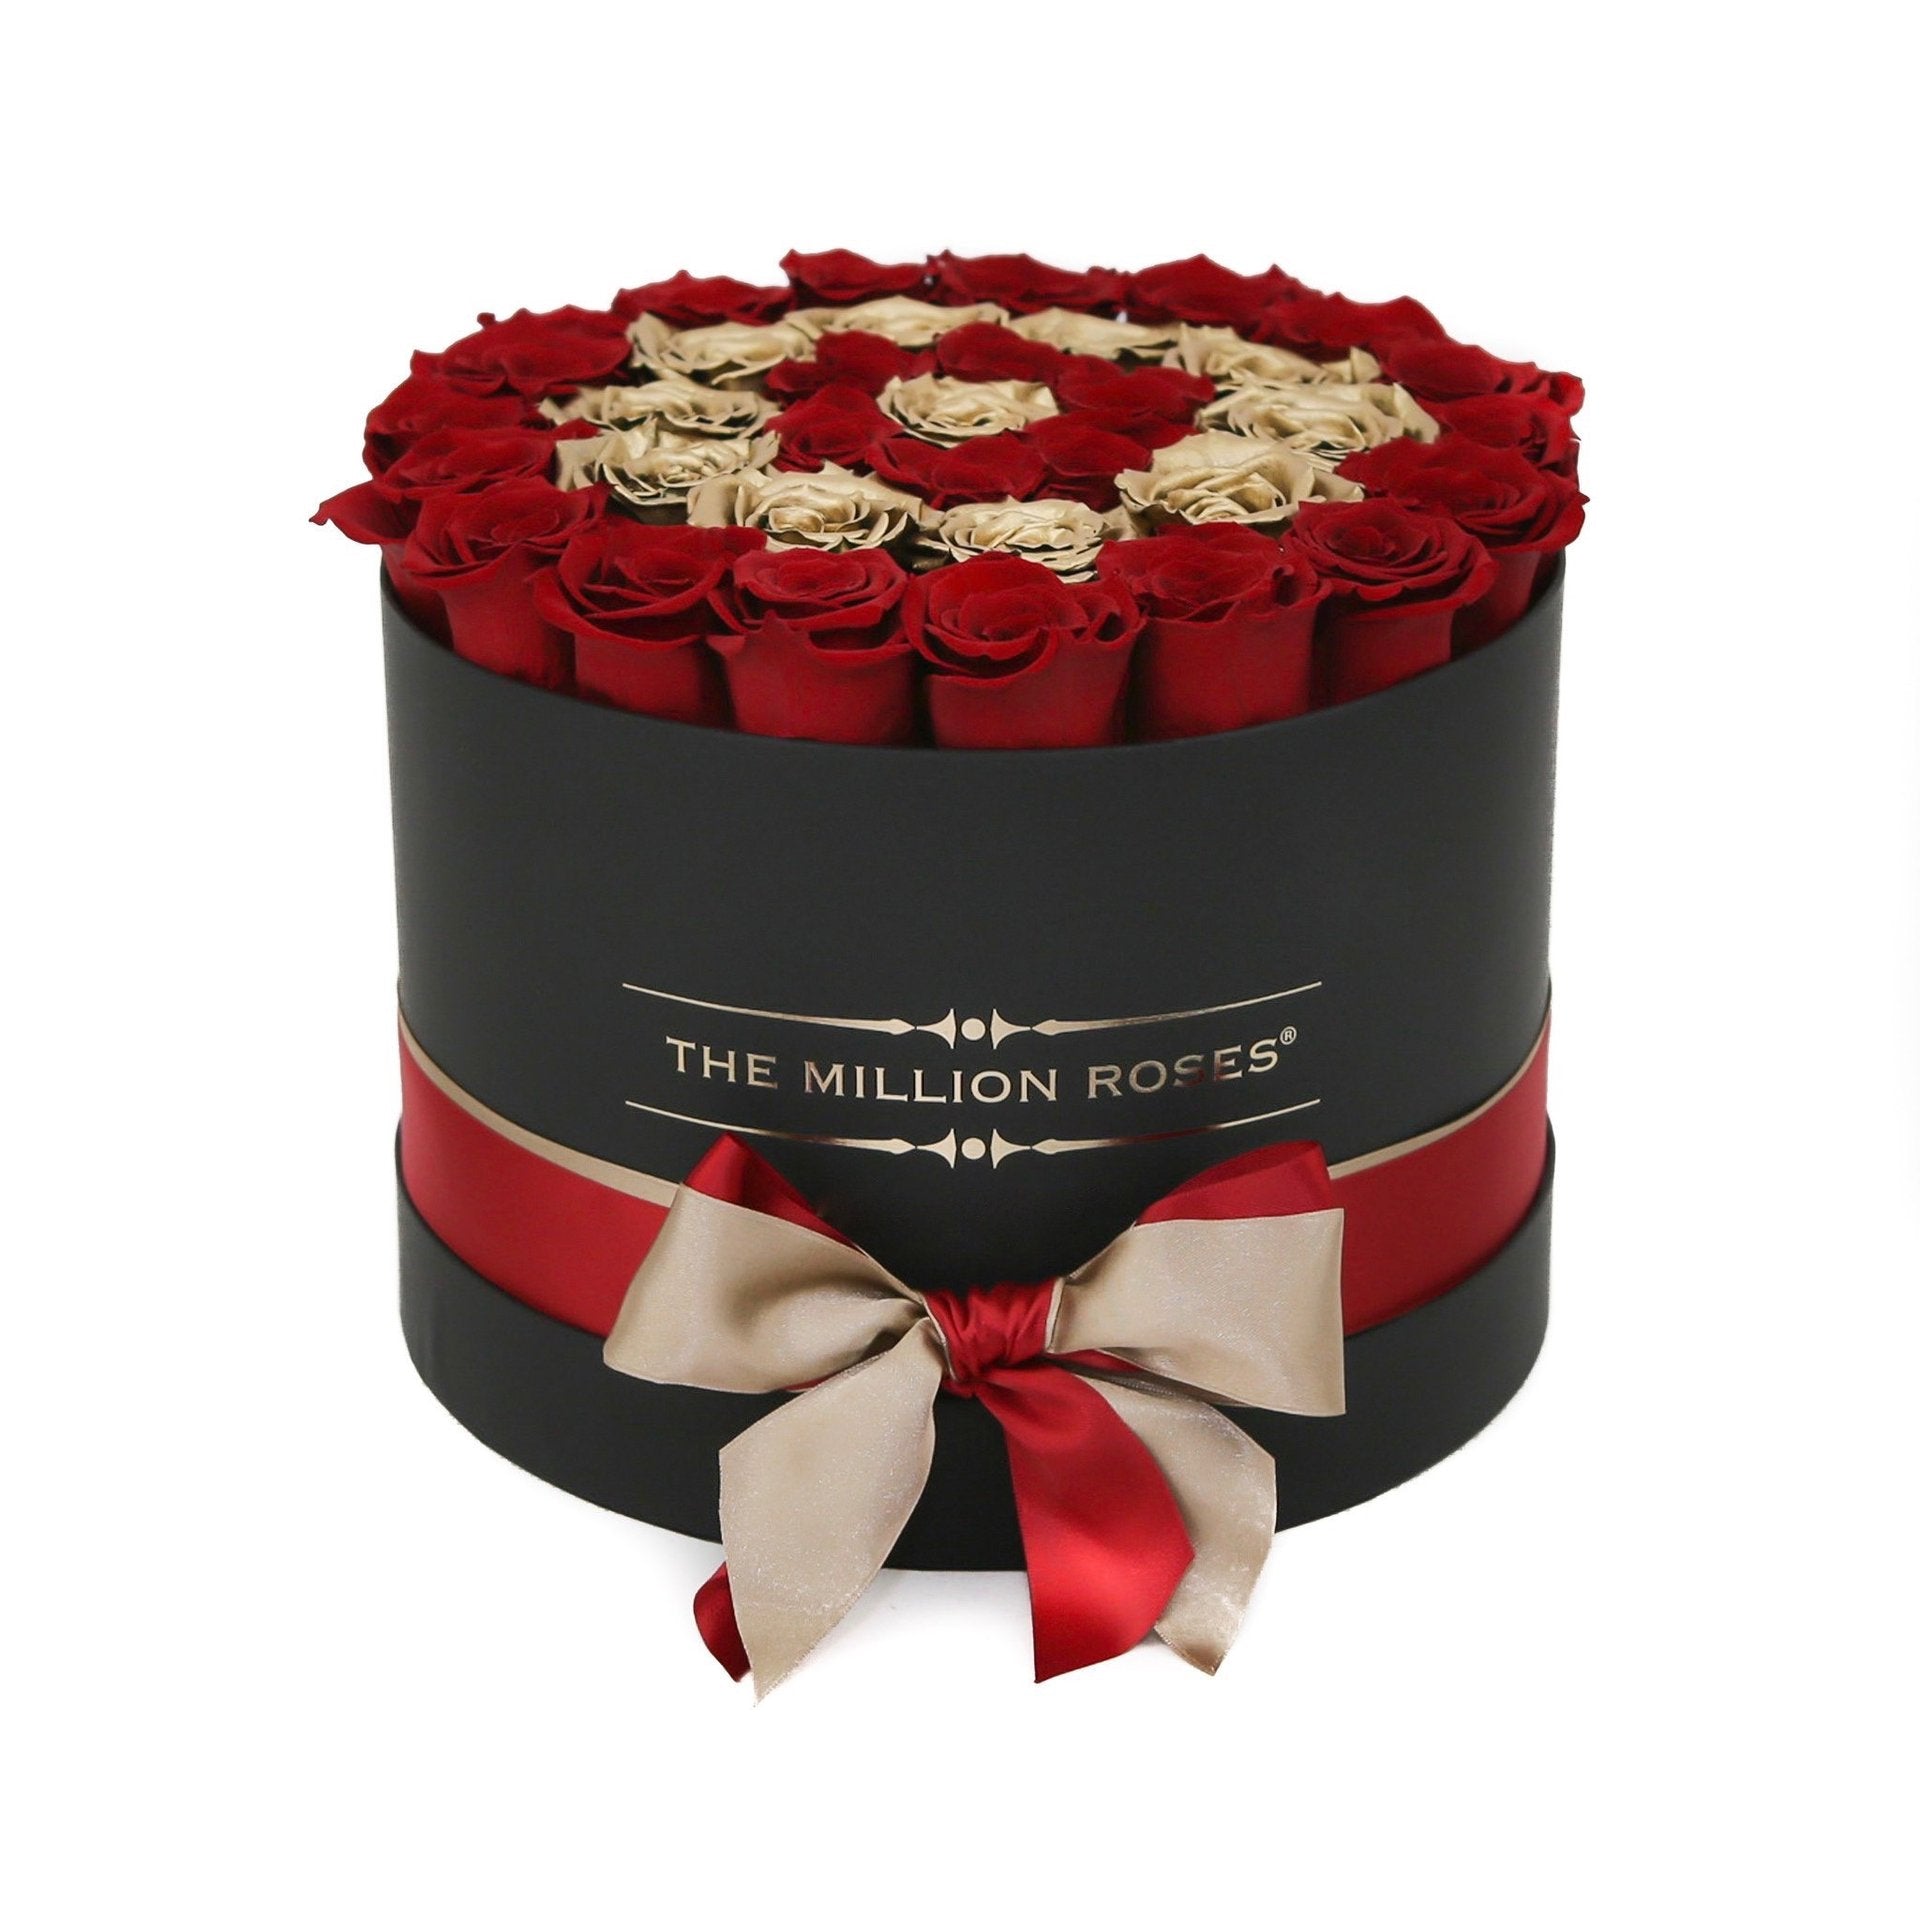 Cutie medie neagră cu trandafiri naturali roșii și aurii